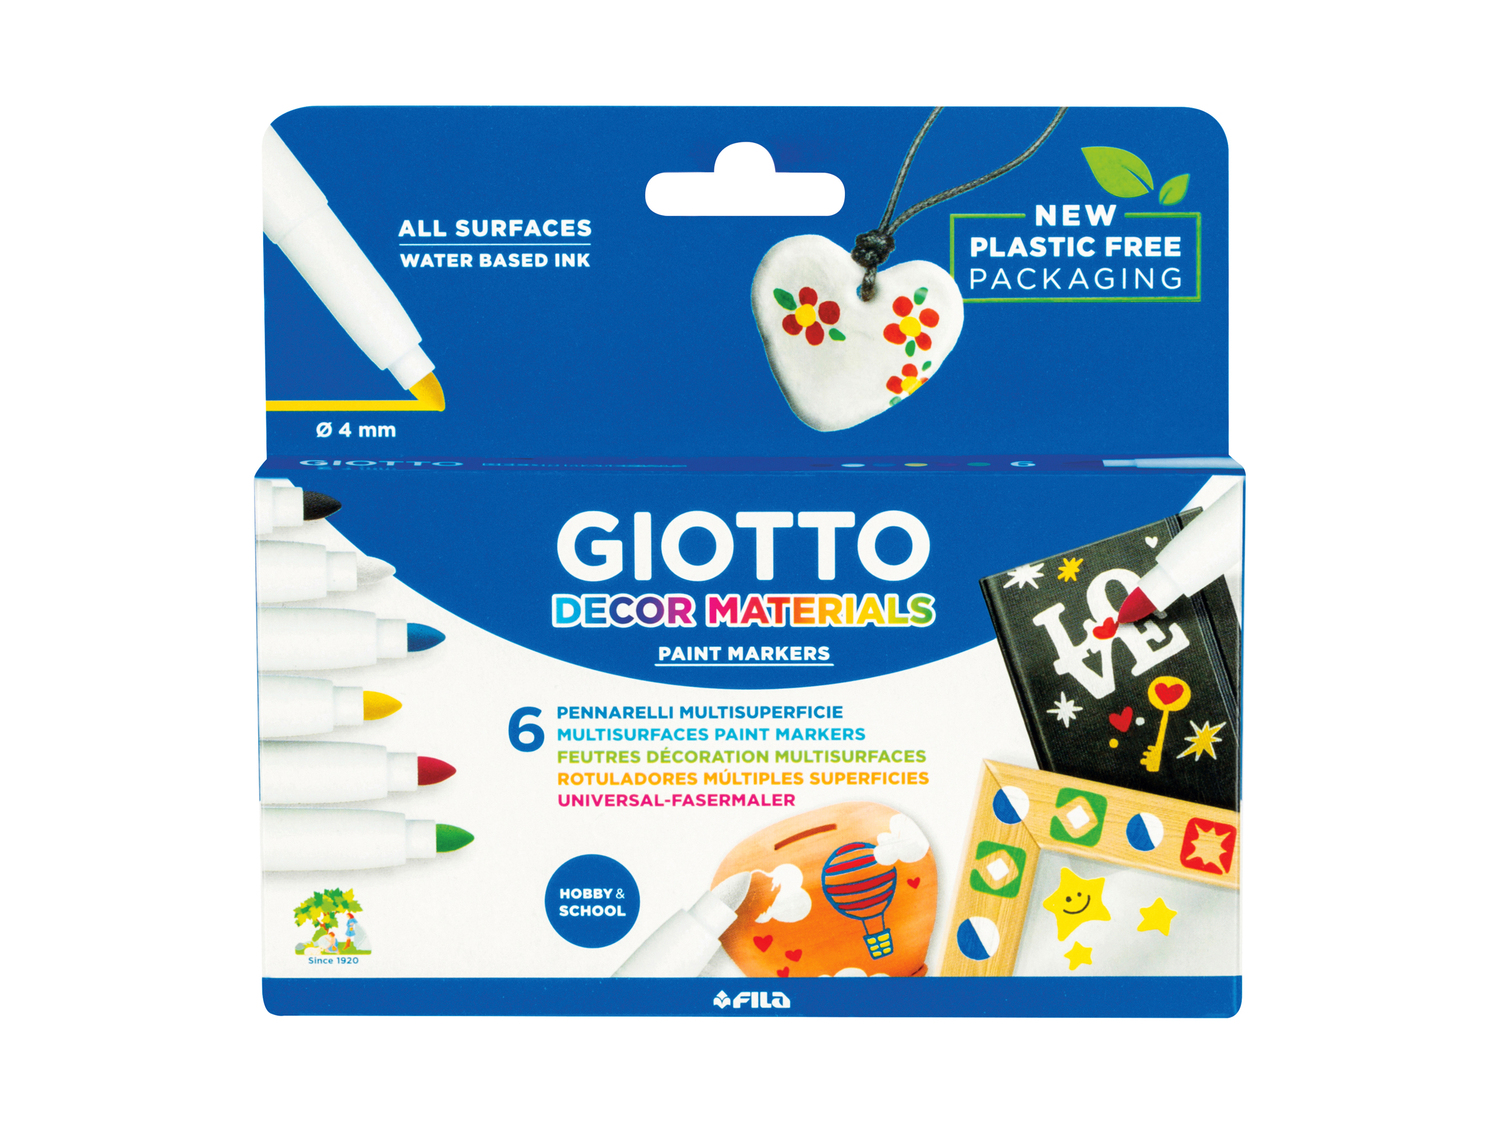 Pennarelli per decorare o per tessuti Giotto, prezzo 5.99 &#8364; 
6 o 8 pezzi
Caratteristiche
 ...